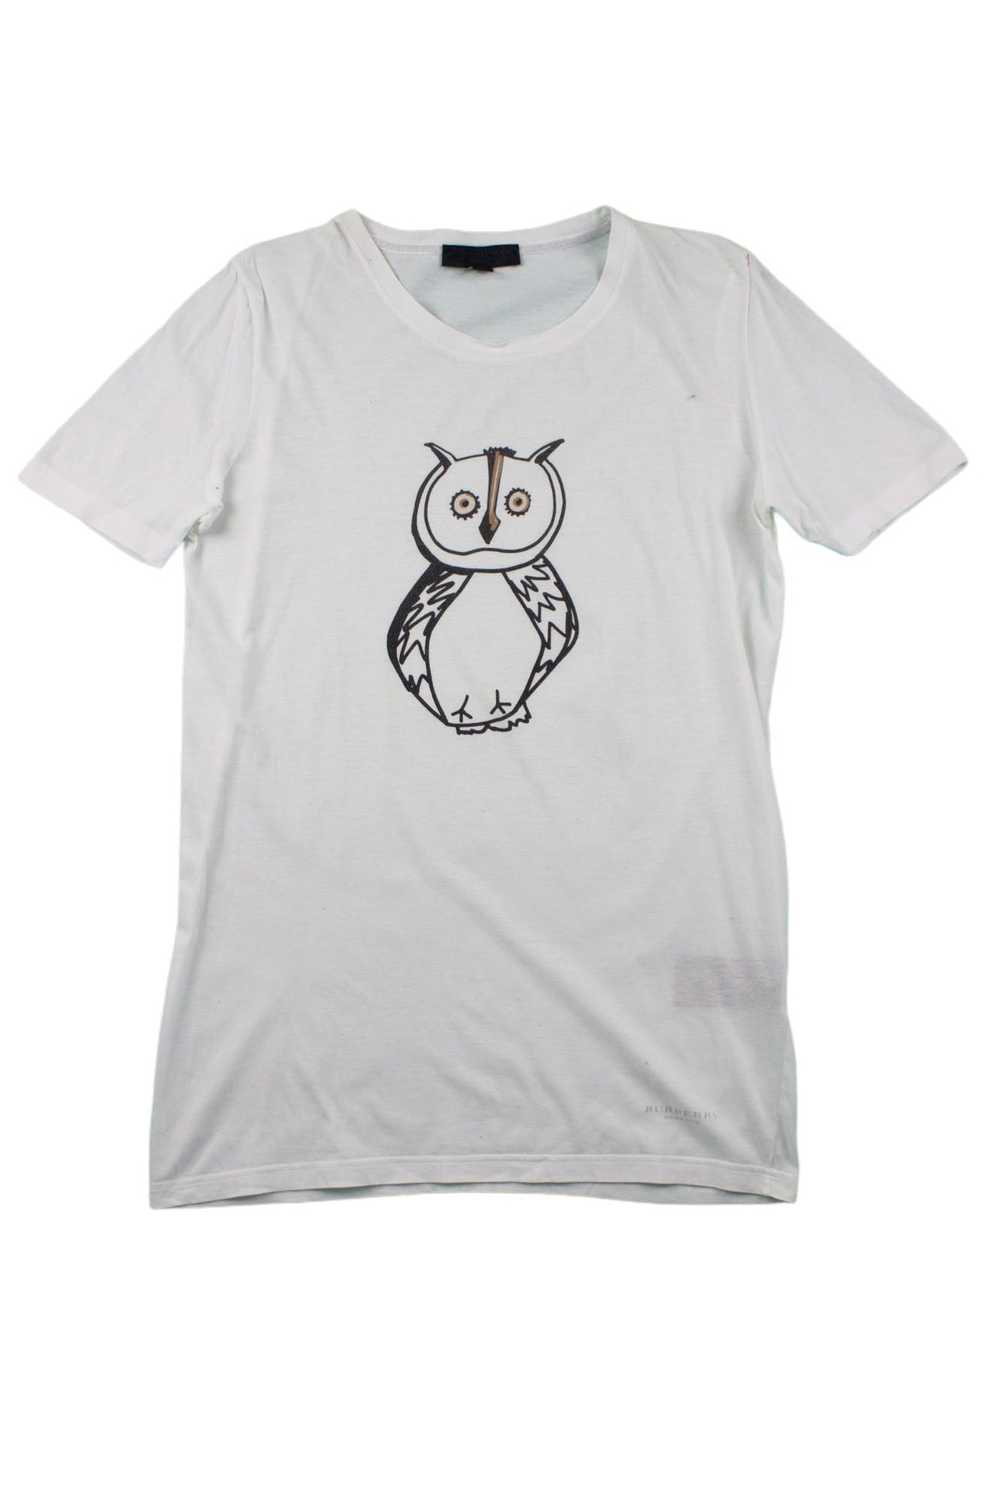 Burberry Prorsum Burberry Prorsum T shirt Owl Pri… - image 1